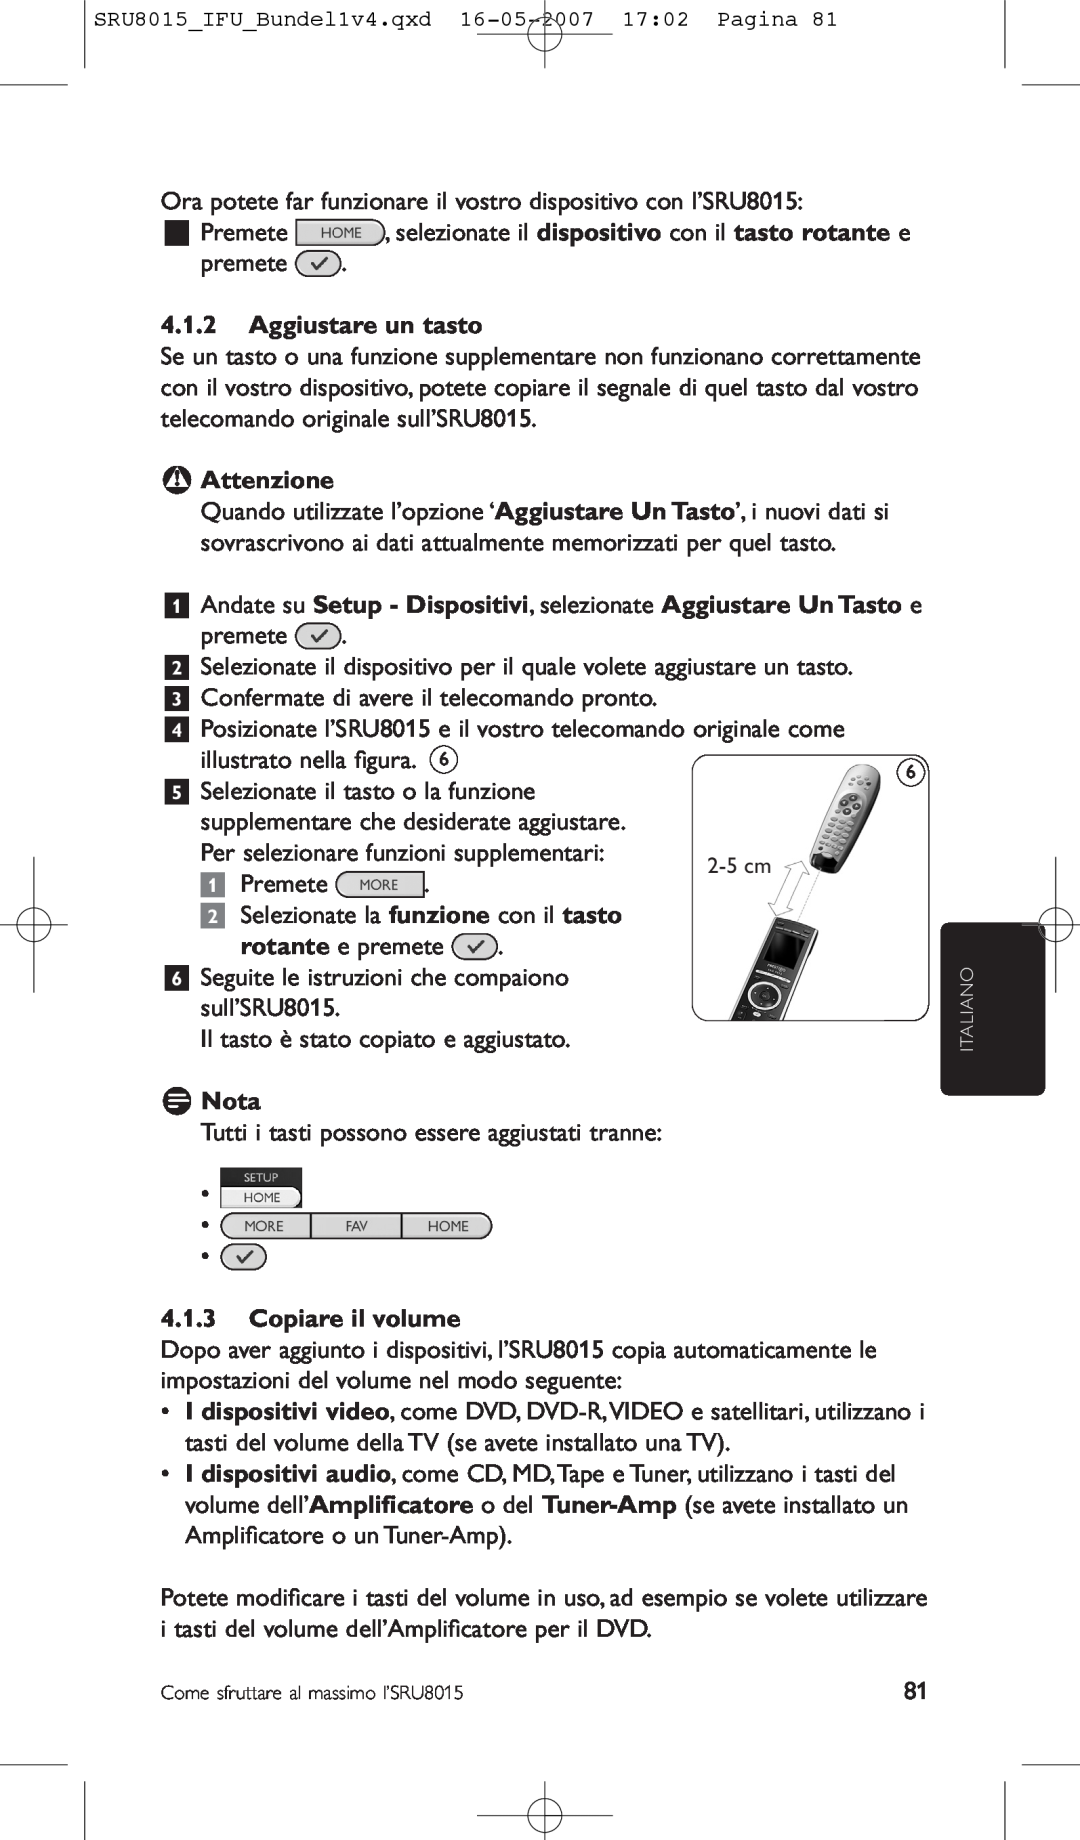 Philips SRU8015 manual Aggiustare un tasto, B Attenzione, Copiare il volume, D Nota, illustrato nella ﬁgura, Premete 